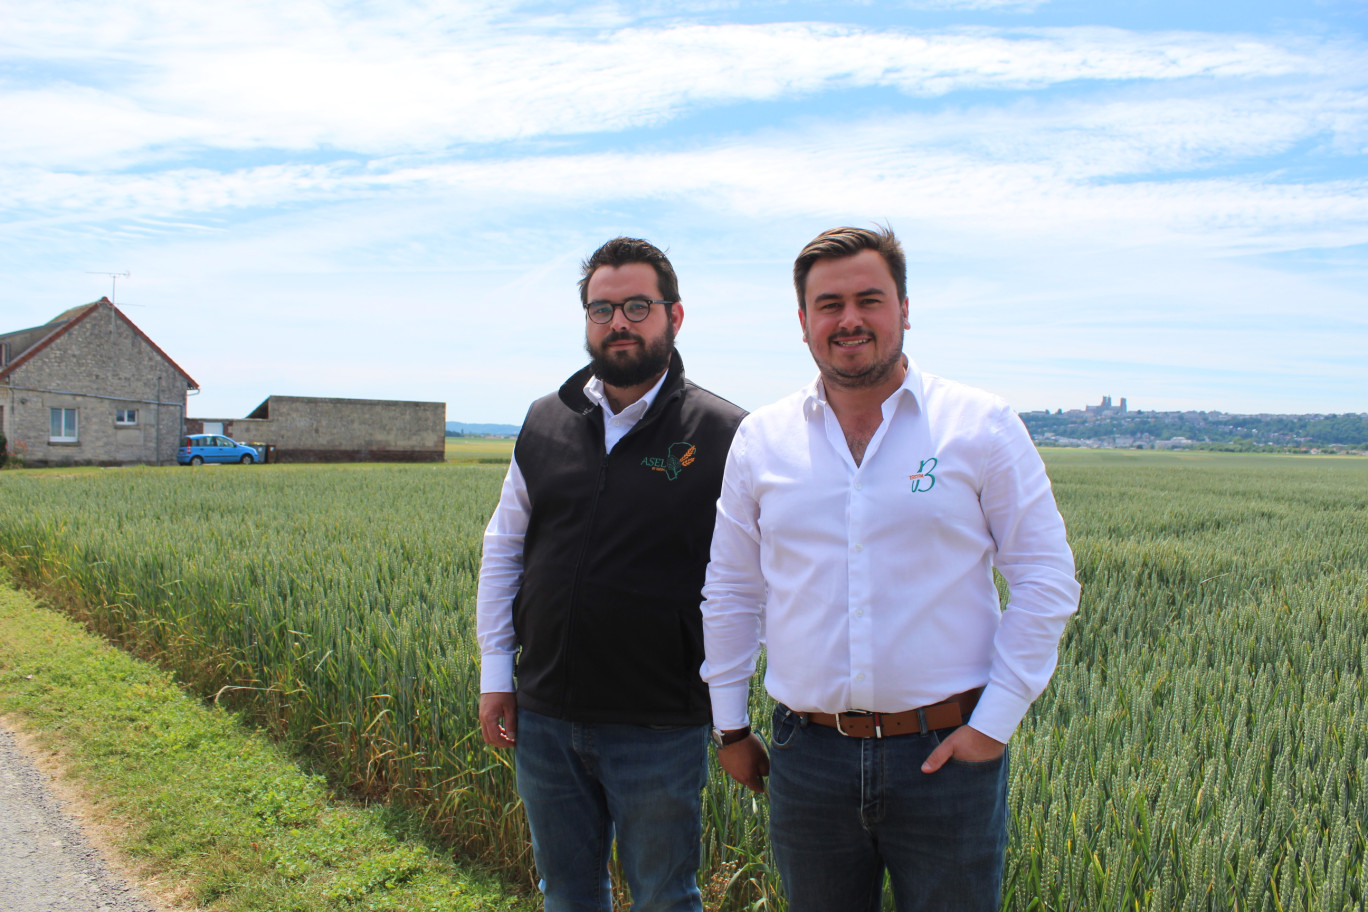 Simon et Paul Bidaut, négociants agricoles, expérimentent à Laon, les solutions de l'agriculture de demain.